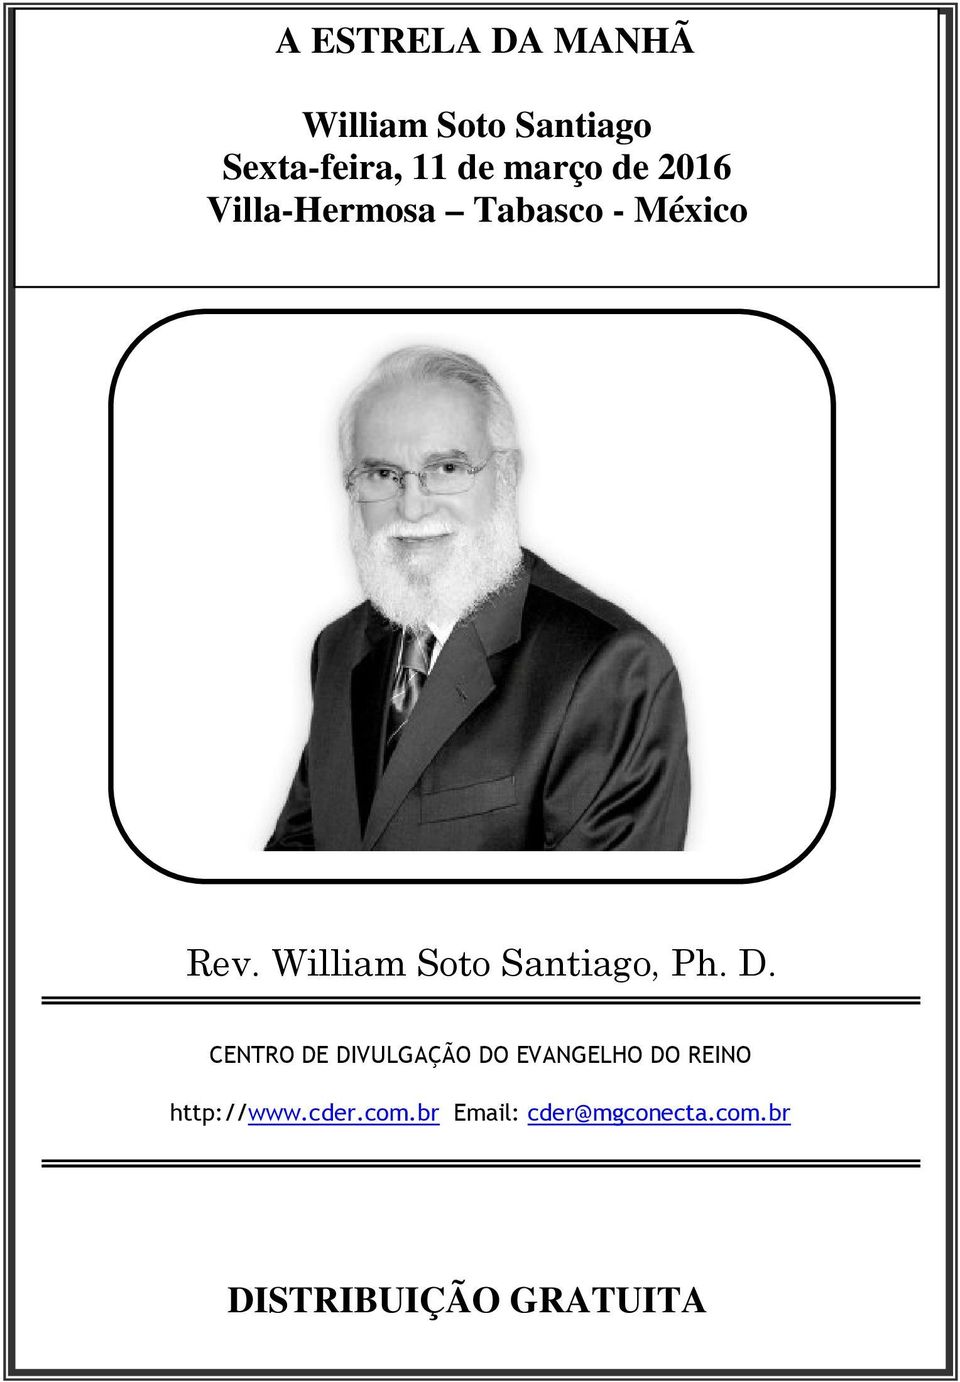 William Soto Santiago, Ph. D.